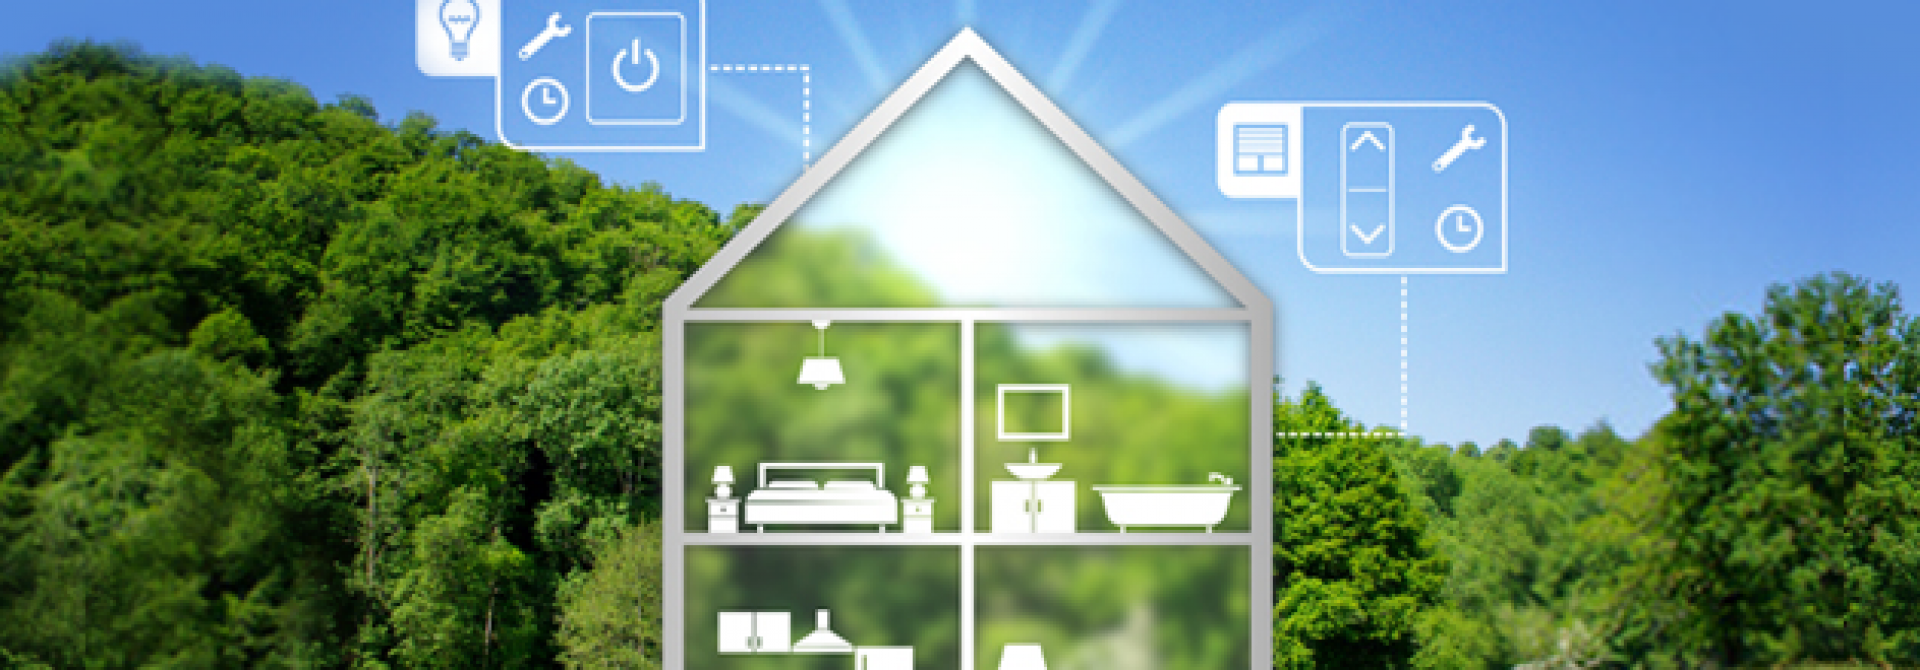 Sicurezza e risparmio energetico con la casa intelligente: tutti i dettagli